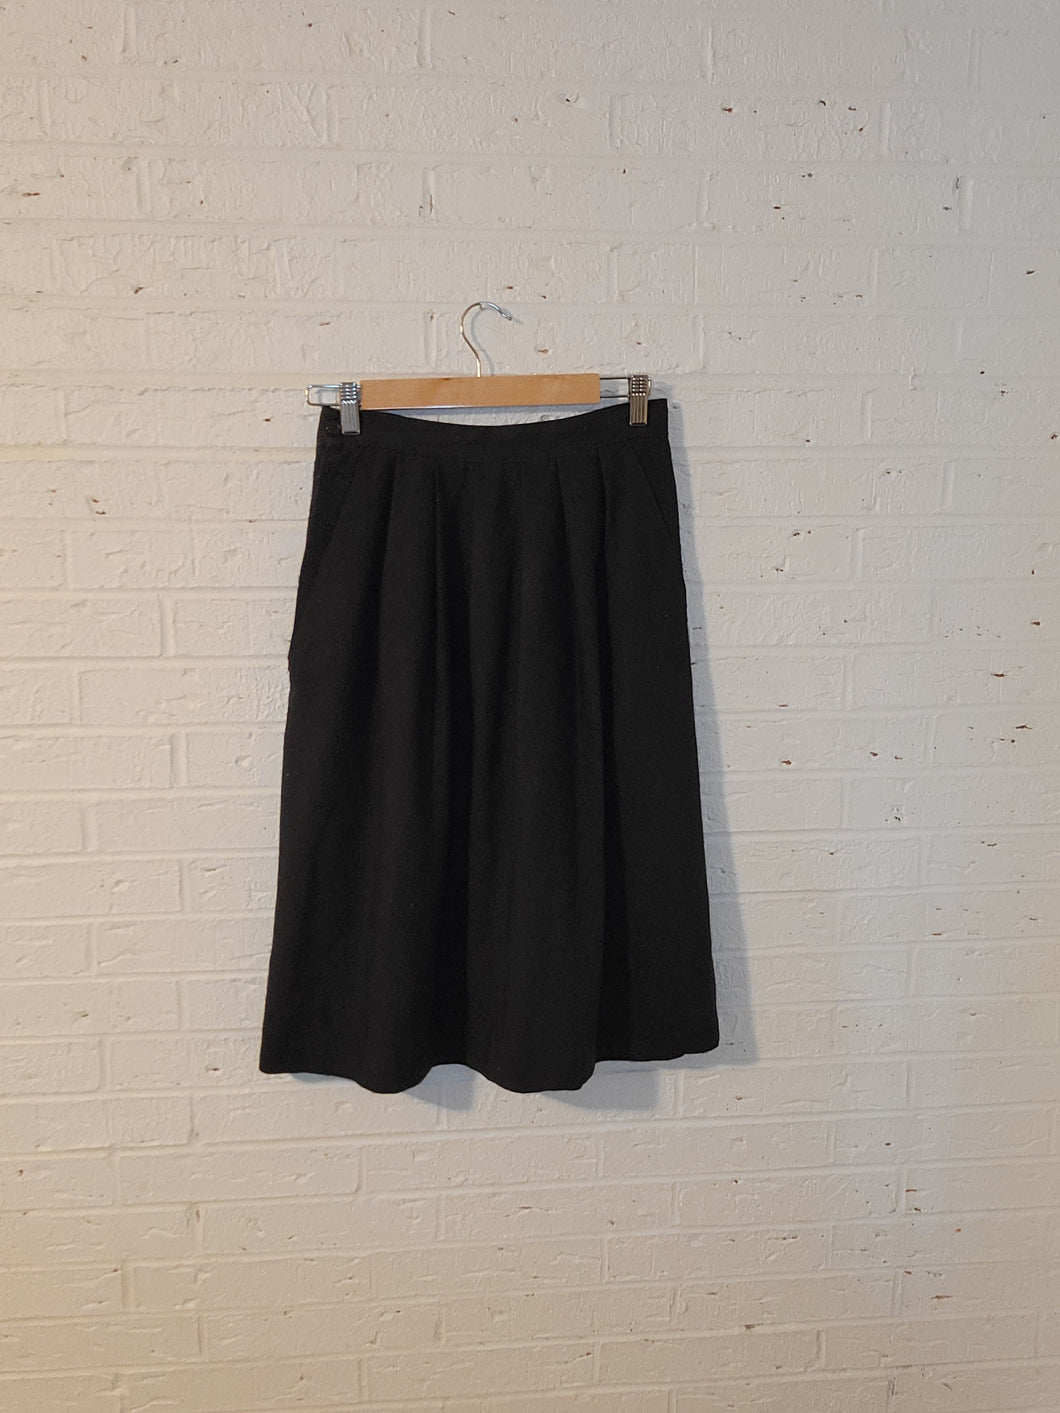 S - Vintage Pleated Skirt